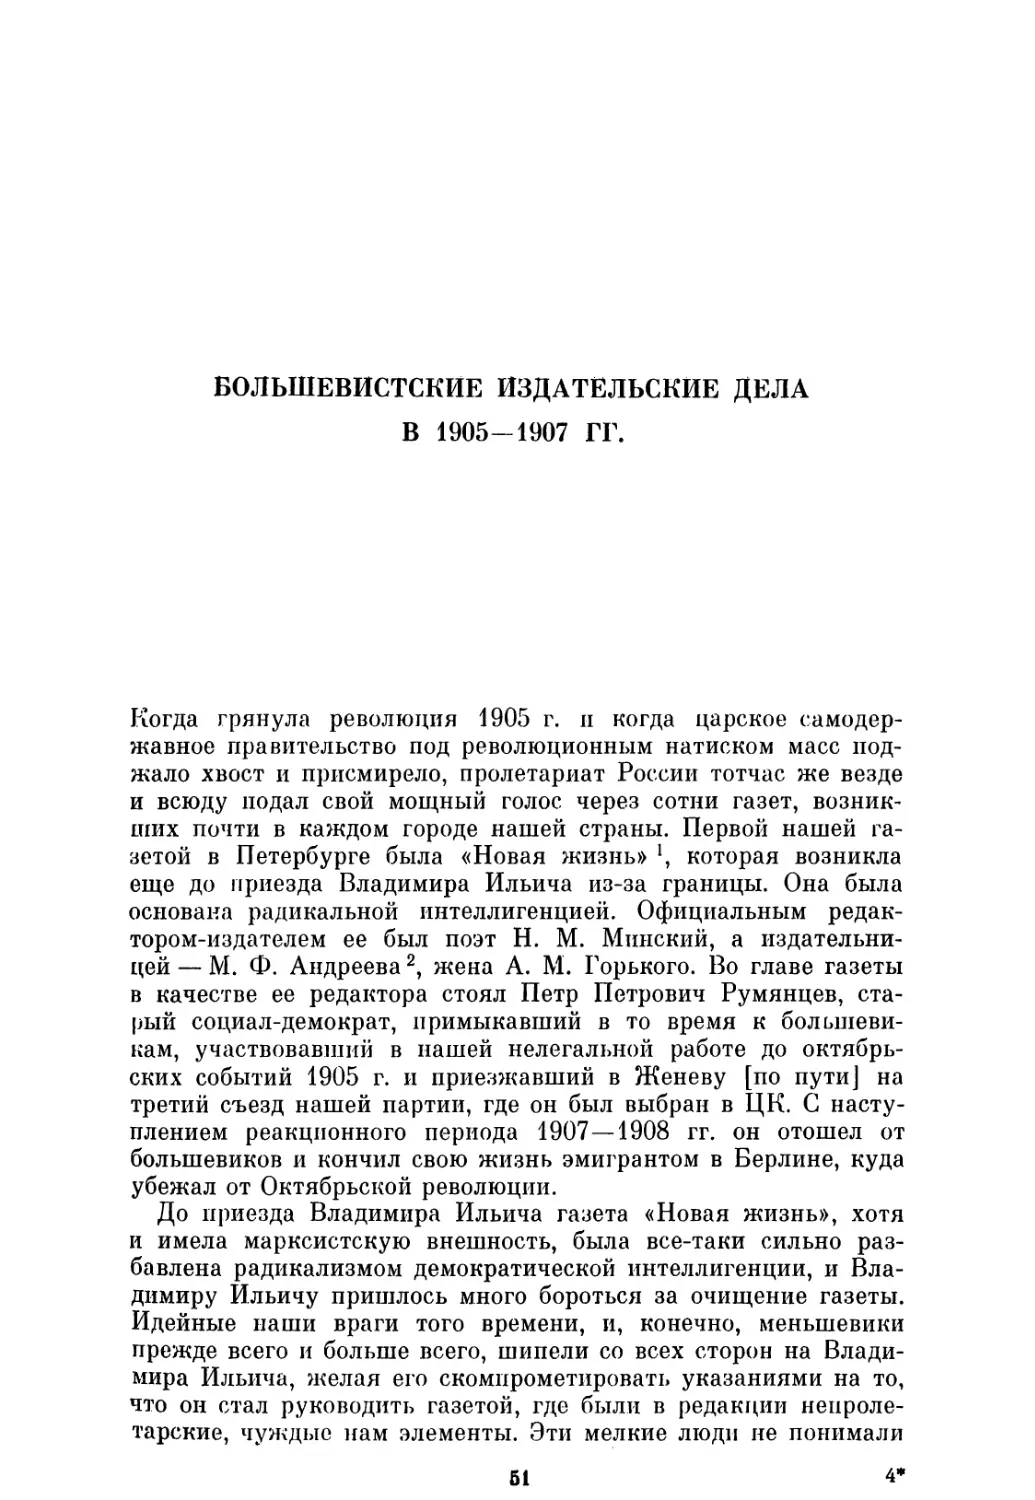 Большевистские издательские дела в 1905—1907 гг.